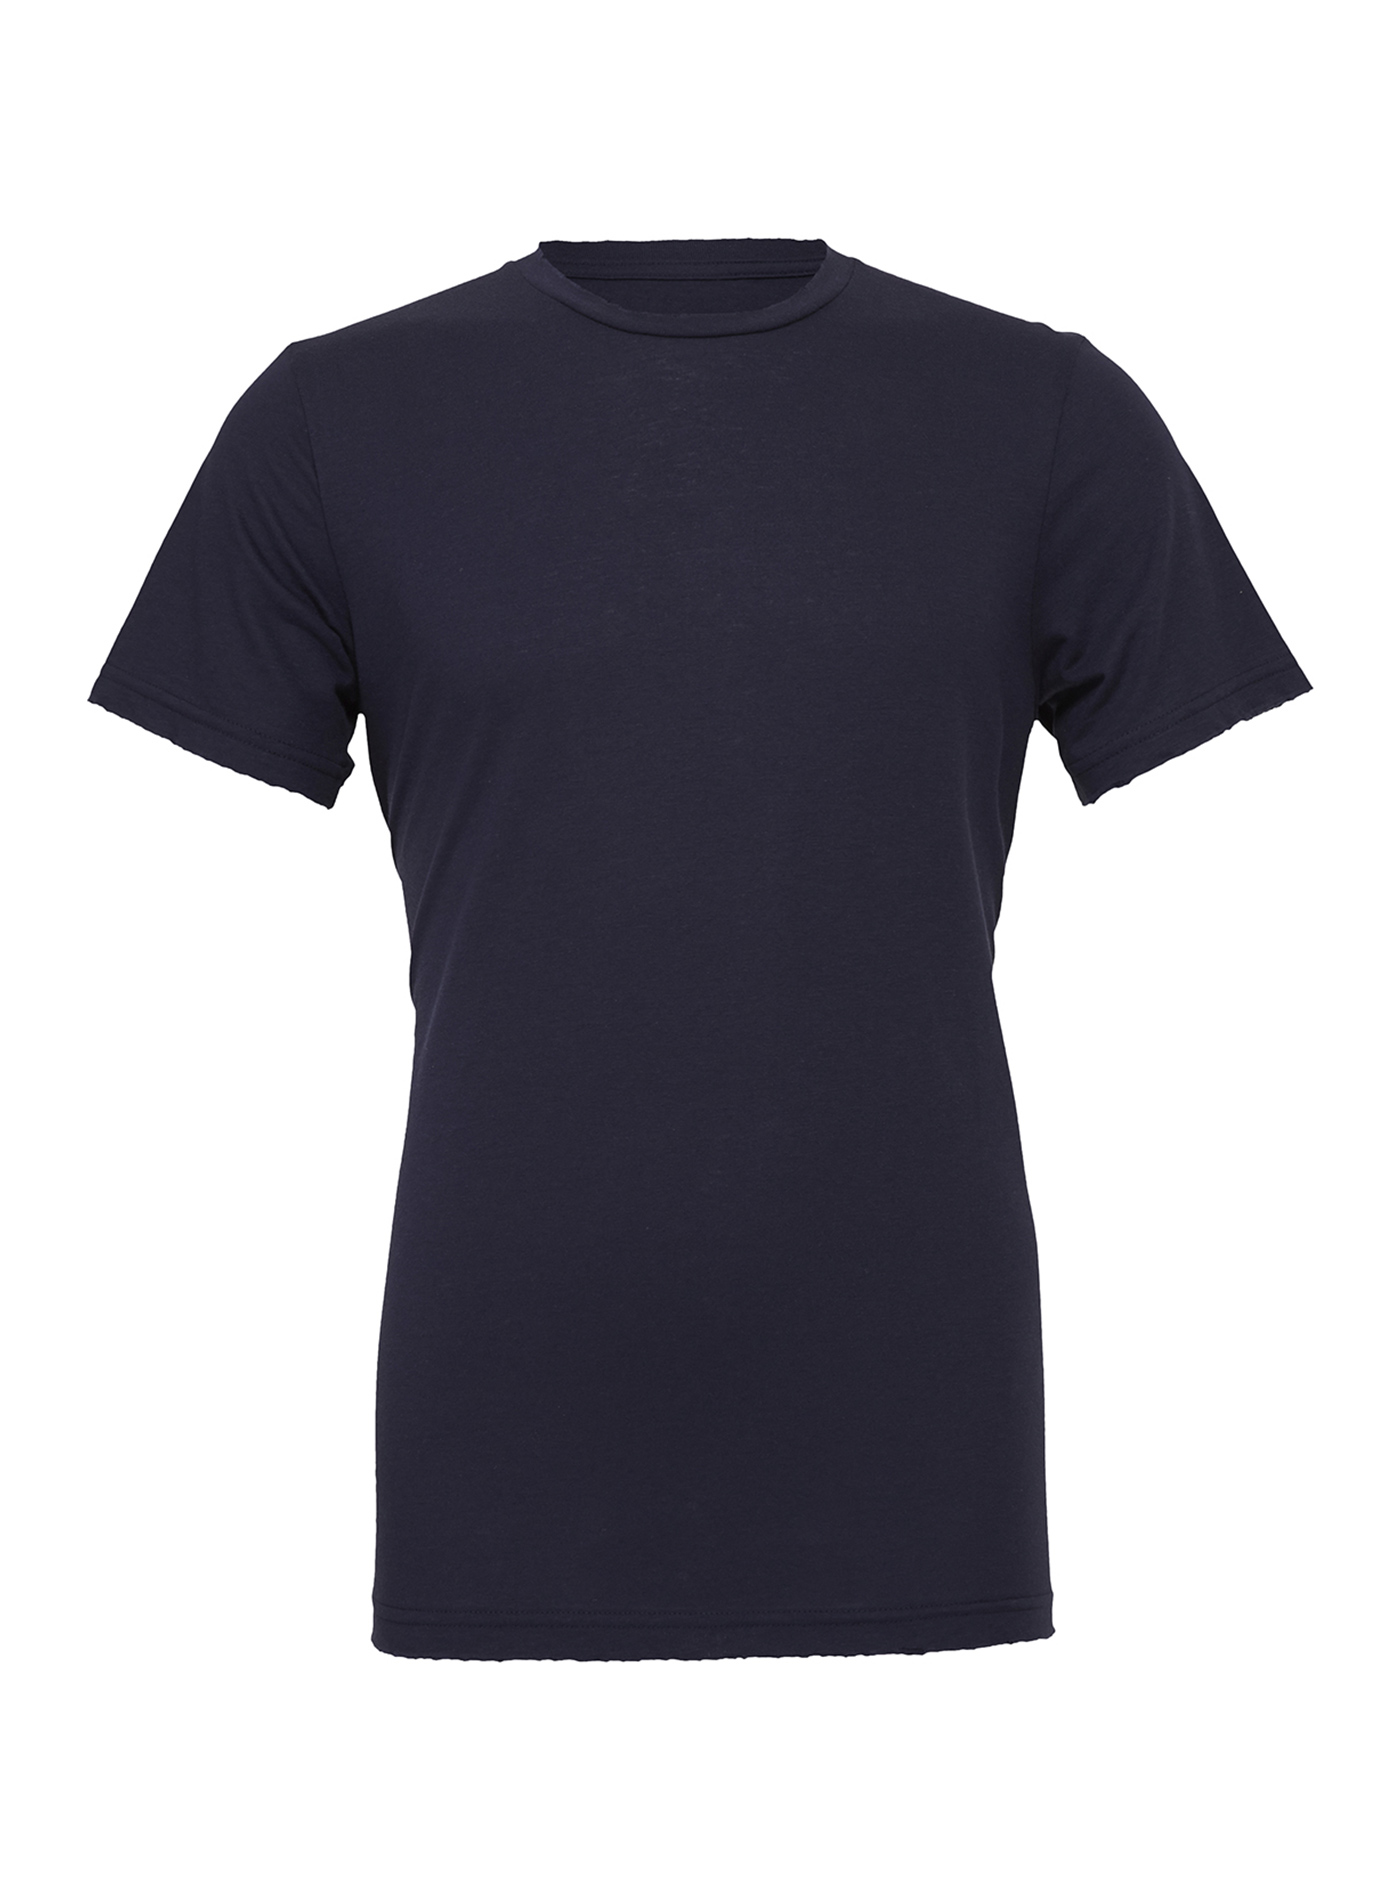 Unisex tričko Jersey - tmavě modrá M